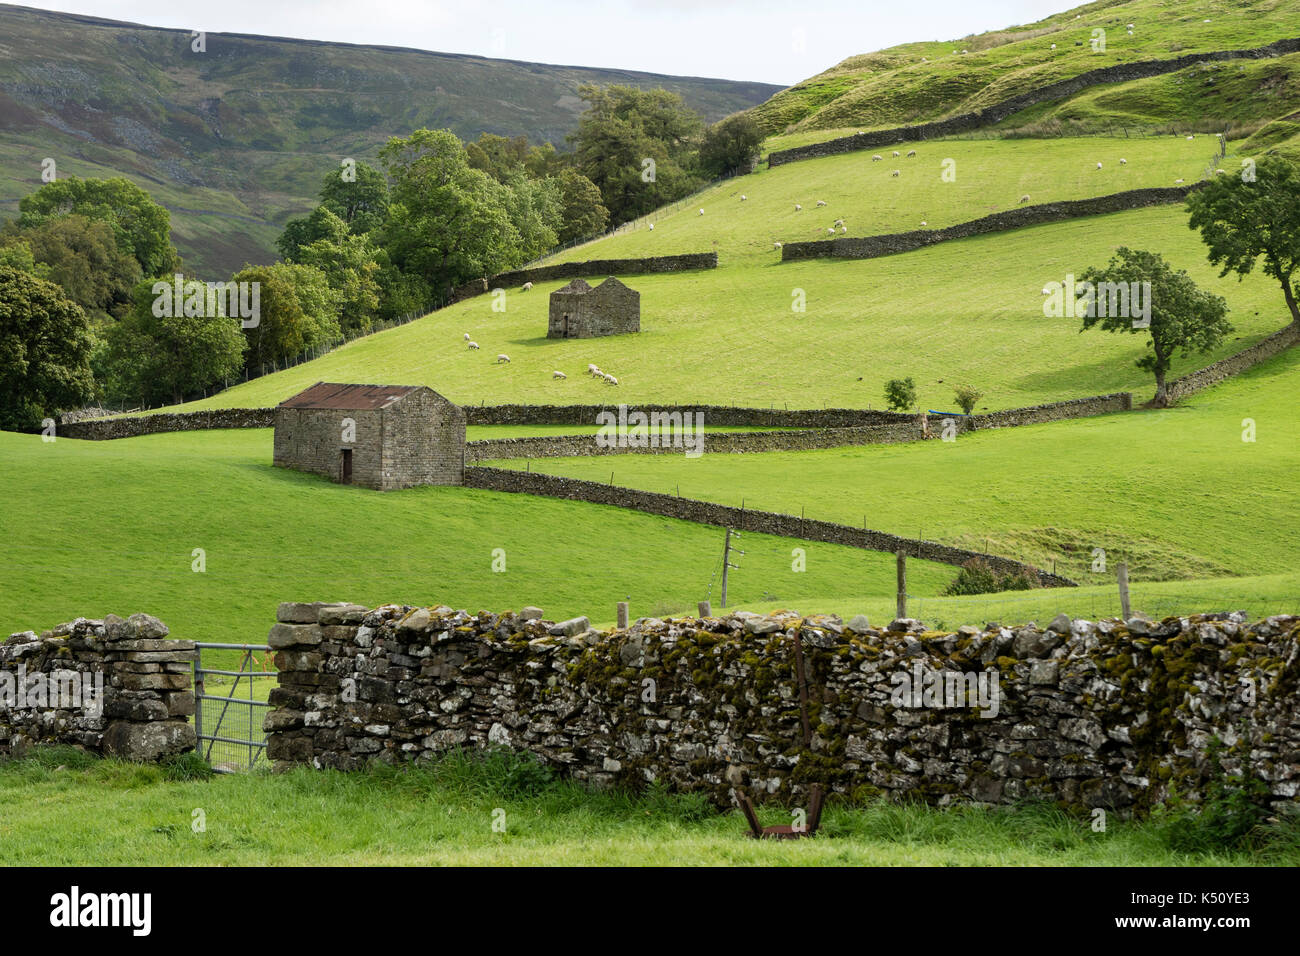 Ein traditionelles Yorkshire Dales Kulturlandschaft von Trockenmauern, die Felder und die Scheune in der Nähe von Keld, Swaledale, Yorkshire Dales, Großbritannien Stockfoto